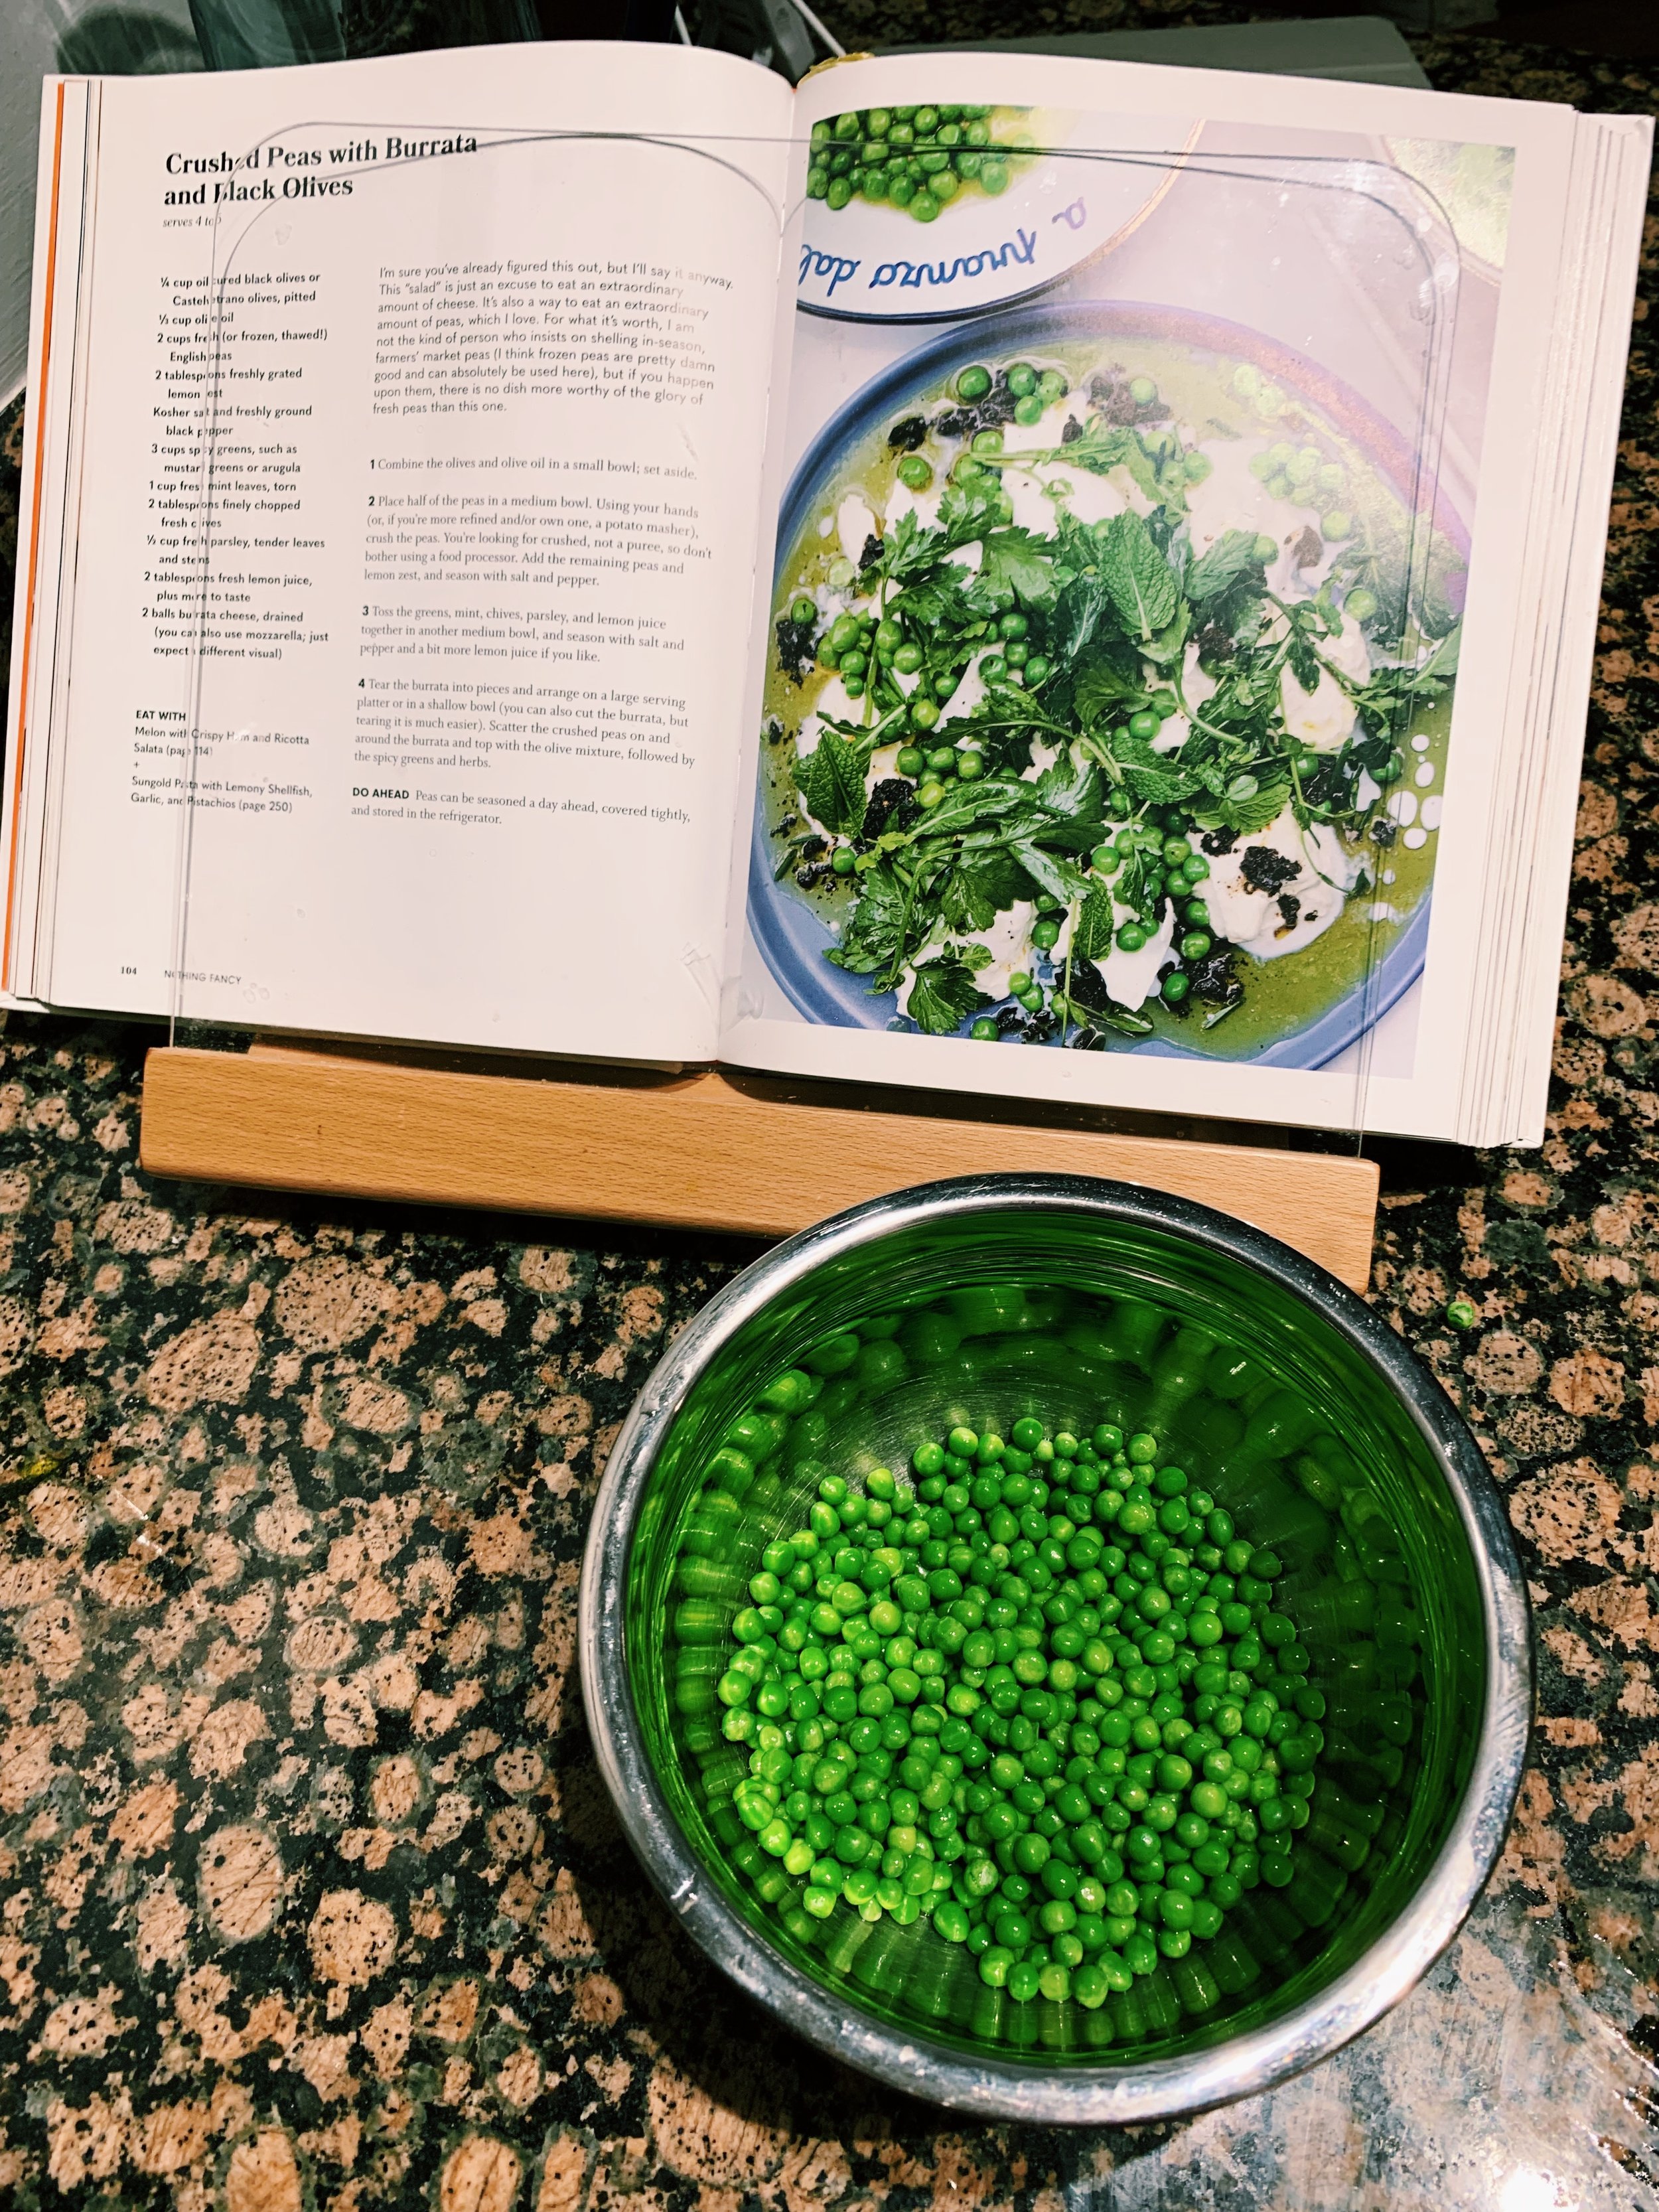 crushed-peas-burrata-salad-olives-alison-roman-2.jpg